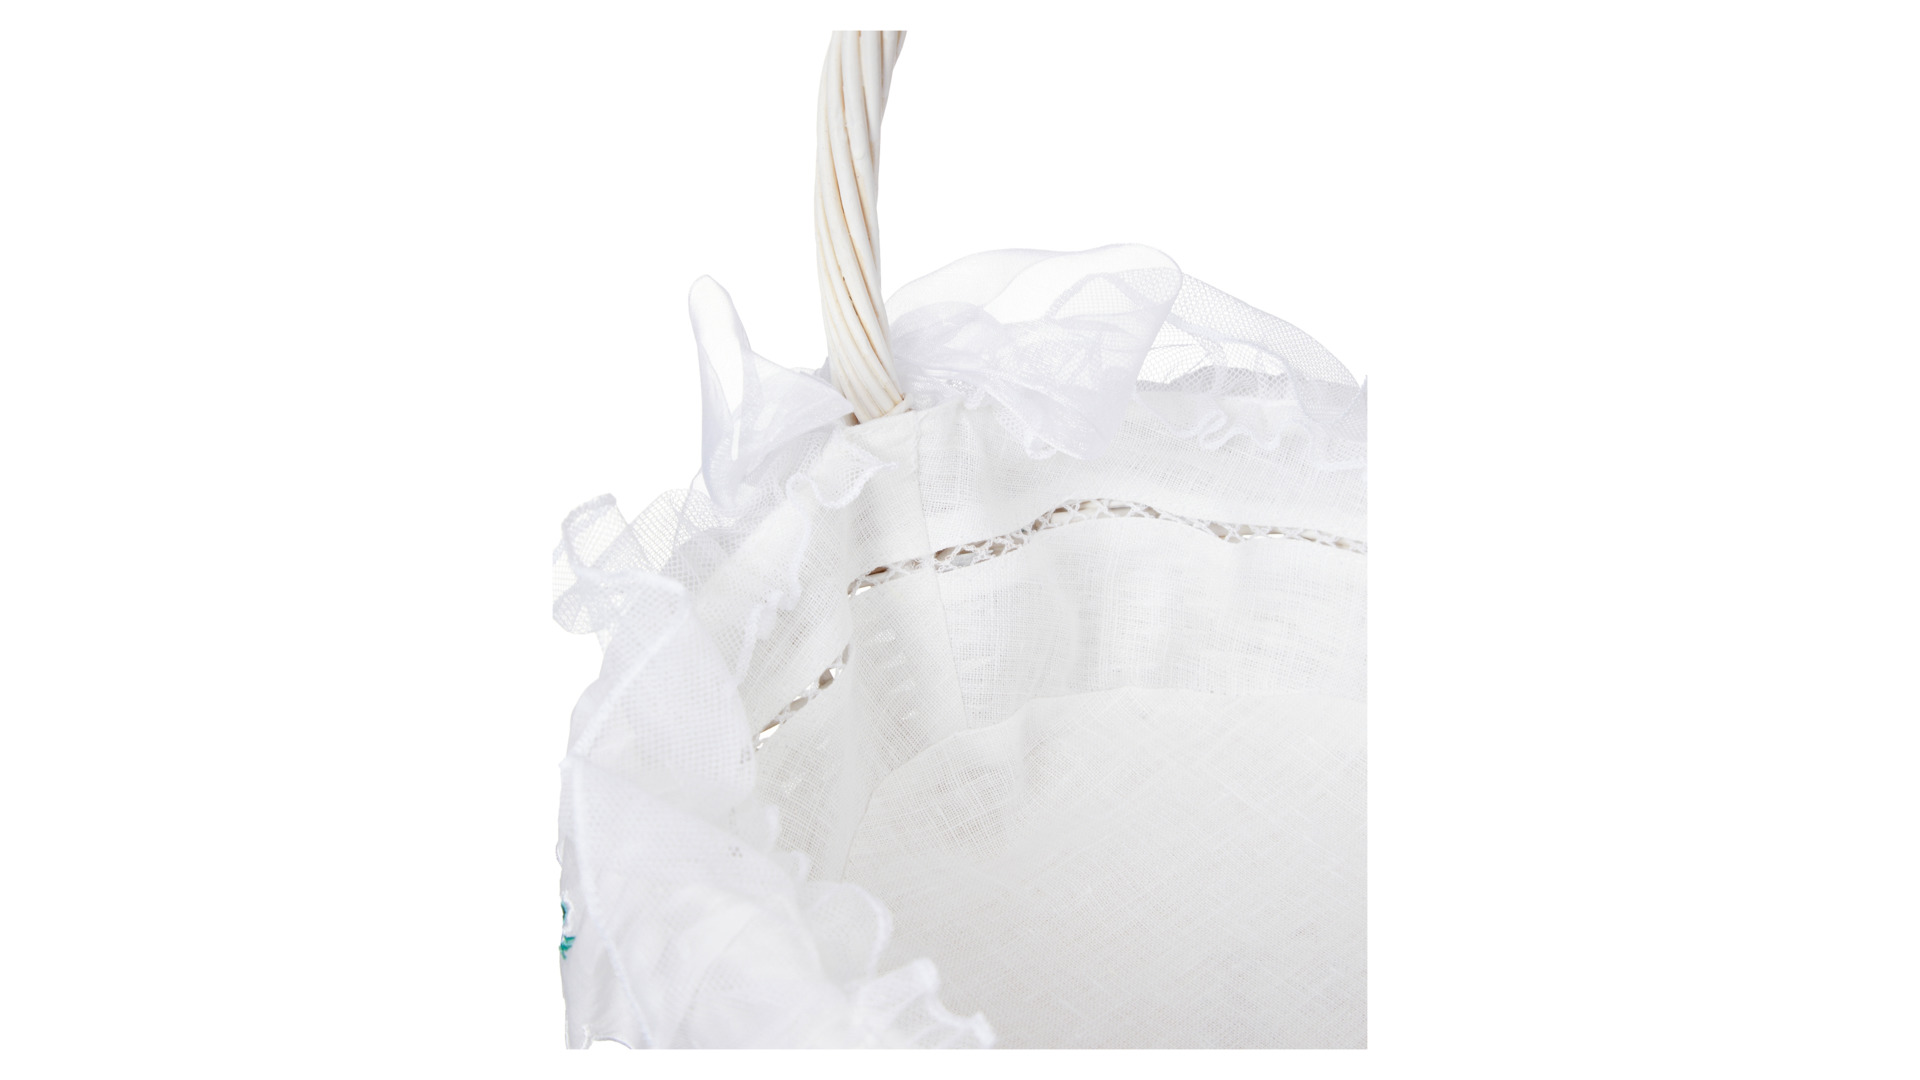 Набор пасхальный из корзины и тканевой вставки Венизное кружево Ландыш 25х35 см, белый, п/к